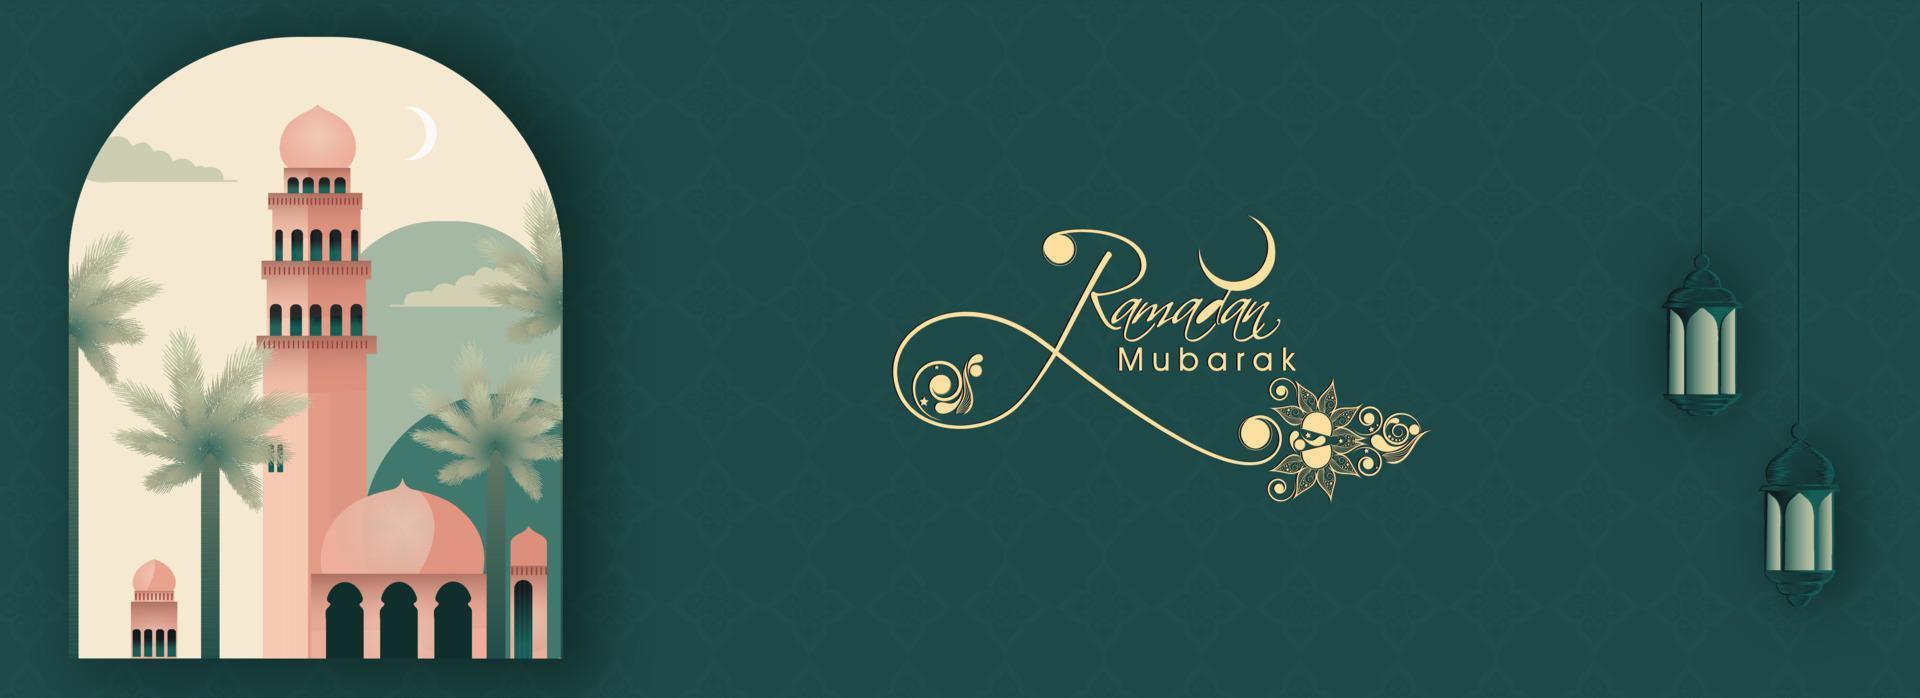 Ramadan Mubarak Banner Design mit Nahansicht von Moschee, Palme Bäume auf hängend Lampen dekoriert blaugrün Hintergrund. vektor